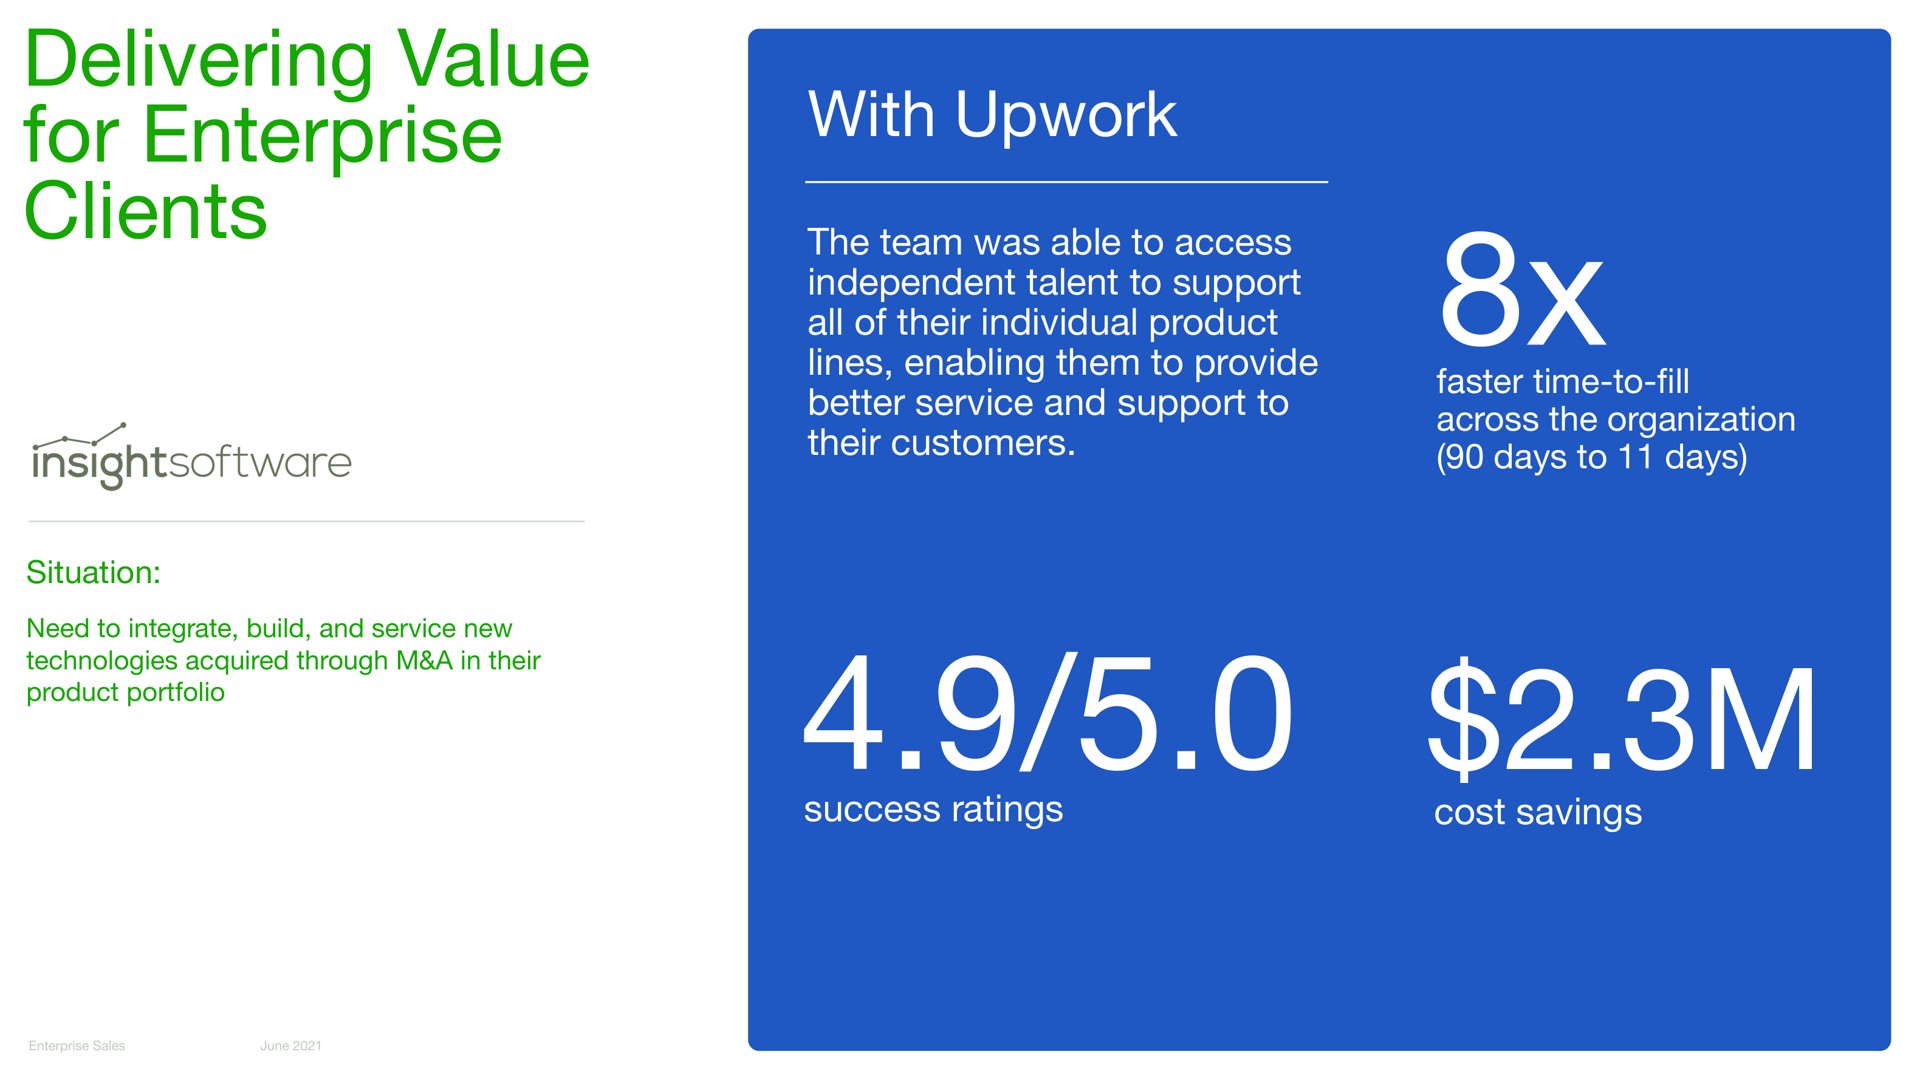 delivering value for enterprise clients with upwork | Upwork